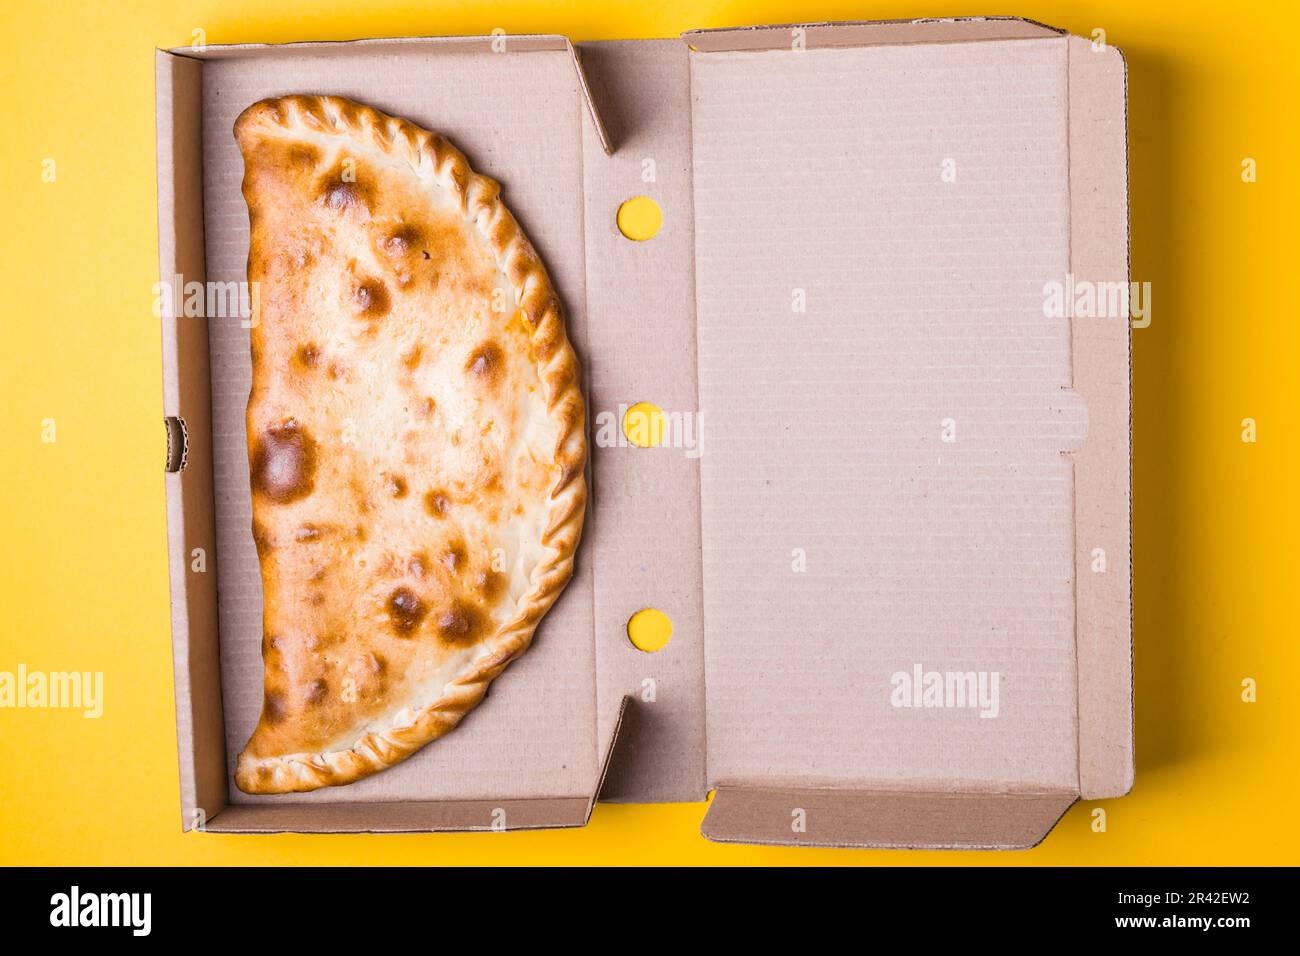 Fermeture de la zone de pizza dans une boîte d'emballage sur fond jaune Banque D'Images